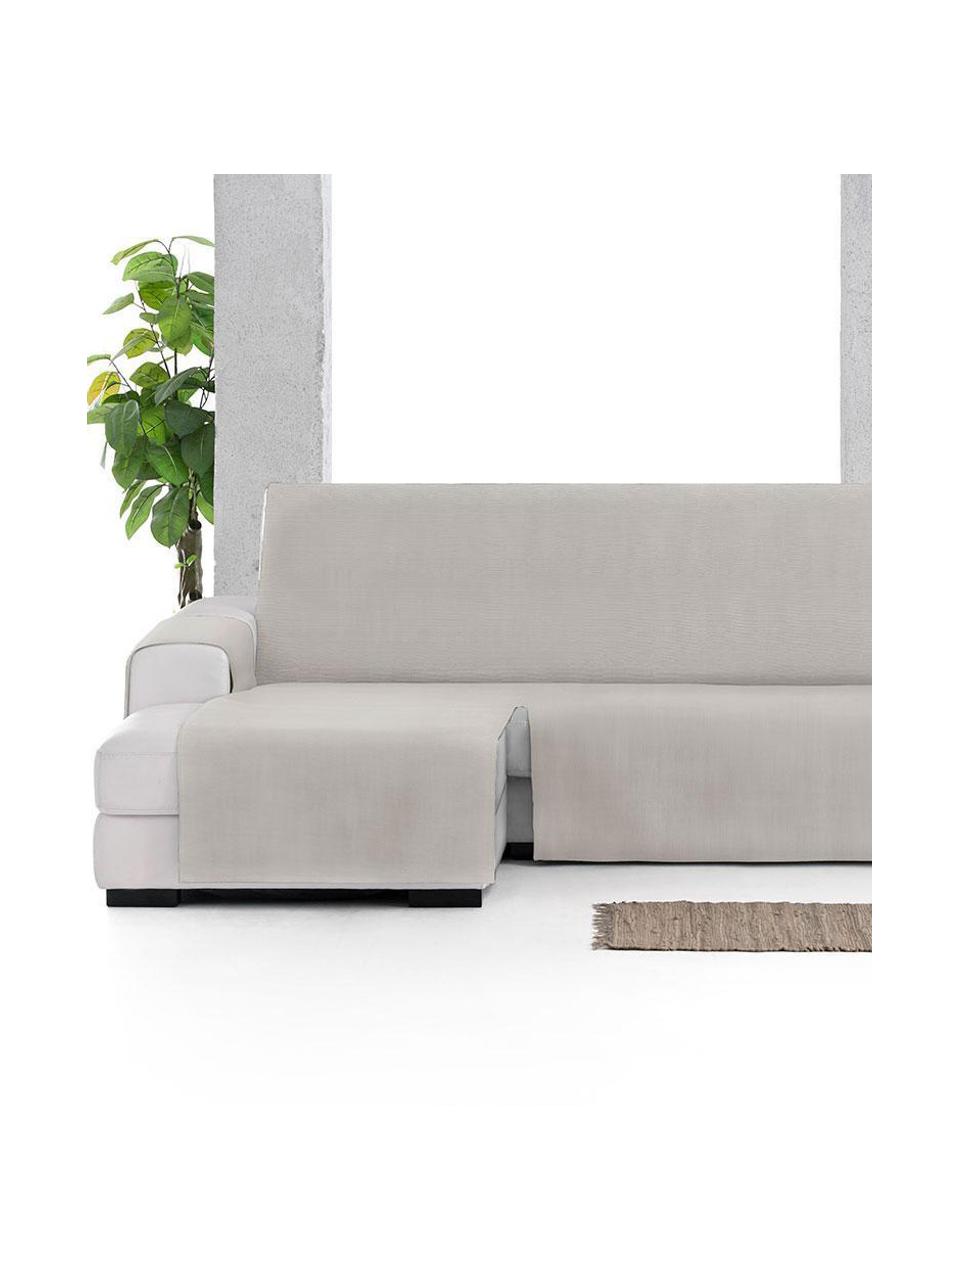 Narzuta na sofę narożną Levante, 65% bawełna, 35% poliester, Szarozielony, S 150 x D 240 cm, lewostronna